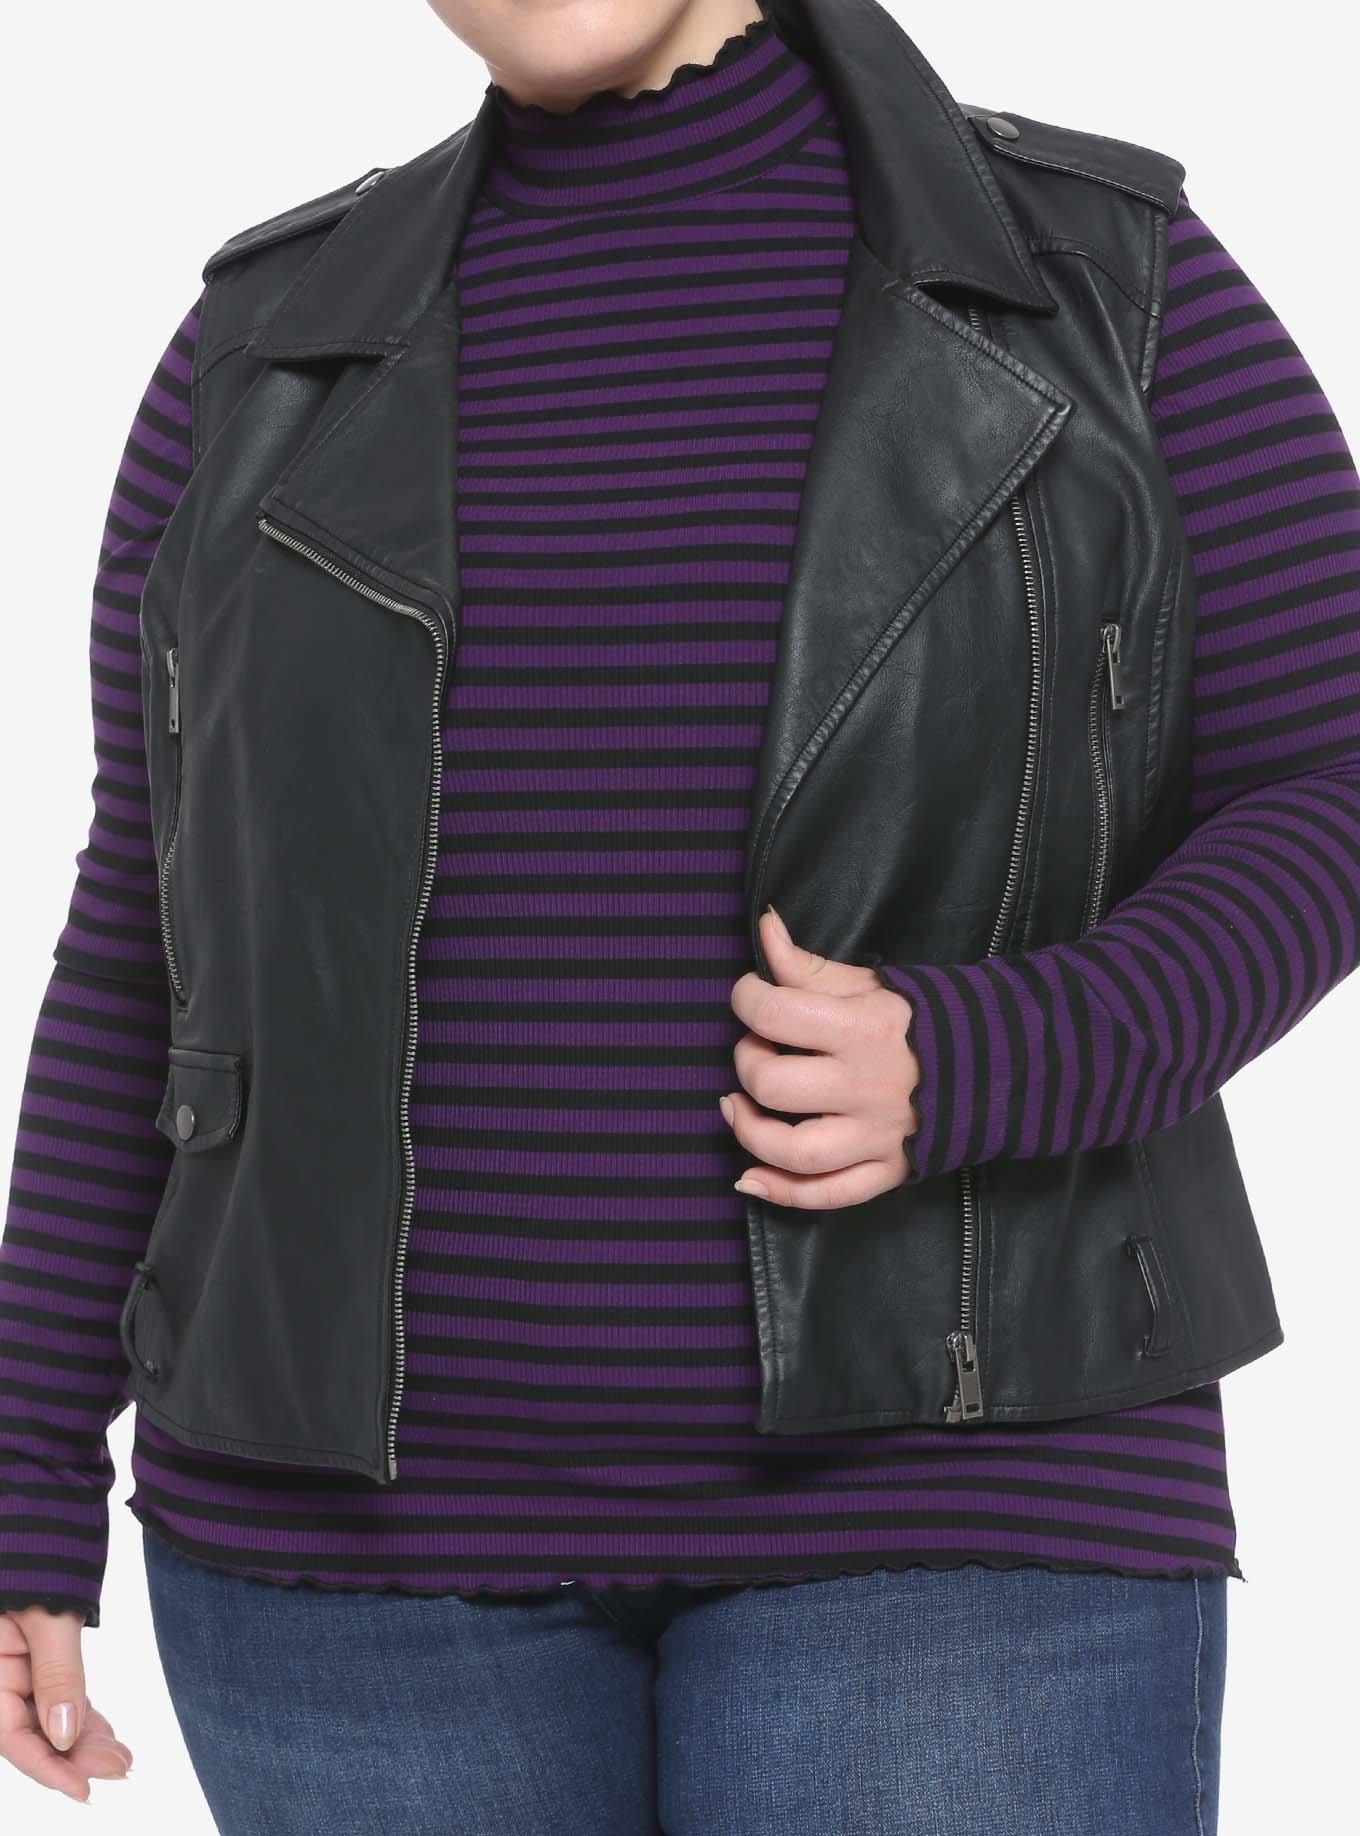 Black & Purple Stripe Mock Neck Girls Long-Sleeve Top Plus Size, STRIPE - PURPLE, alternate